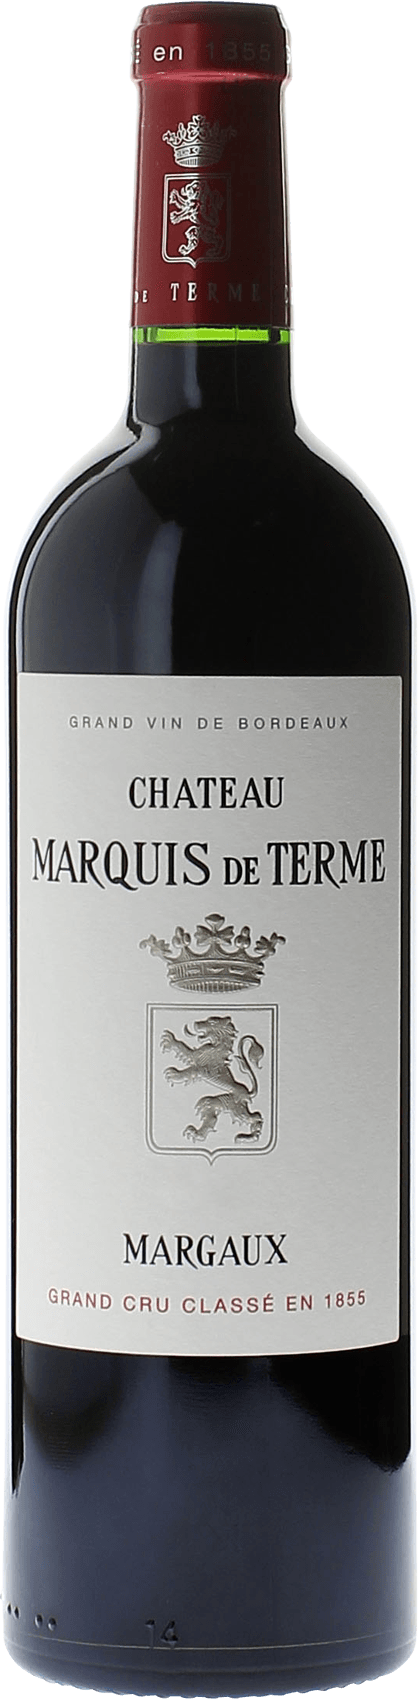 Marquis de terme 2015 4me Grand cru class Margaux, Bordeaux rouge